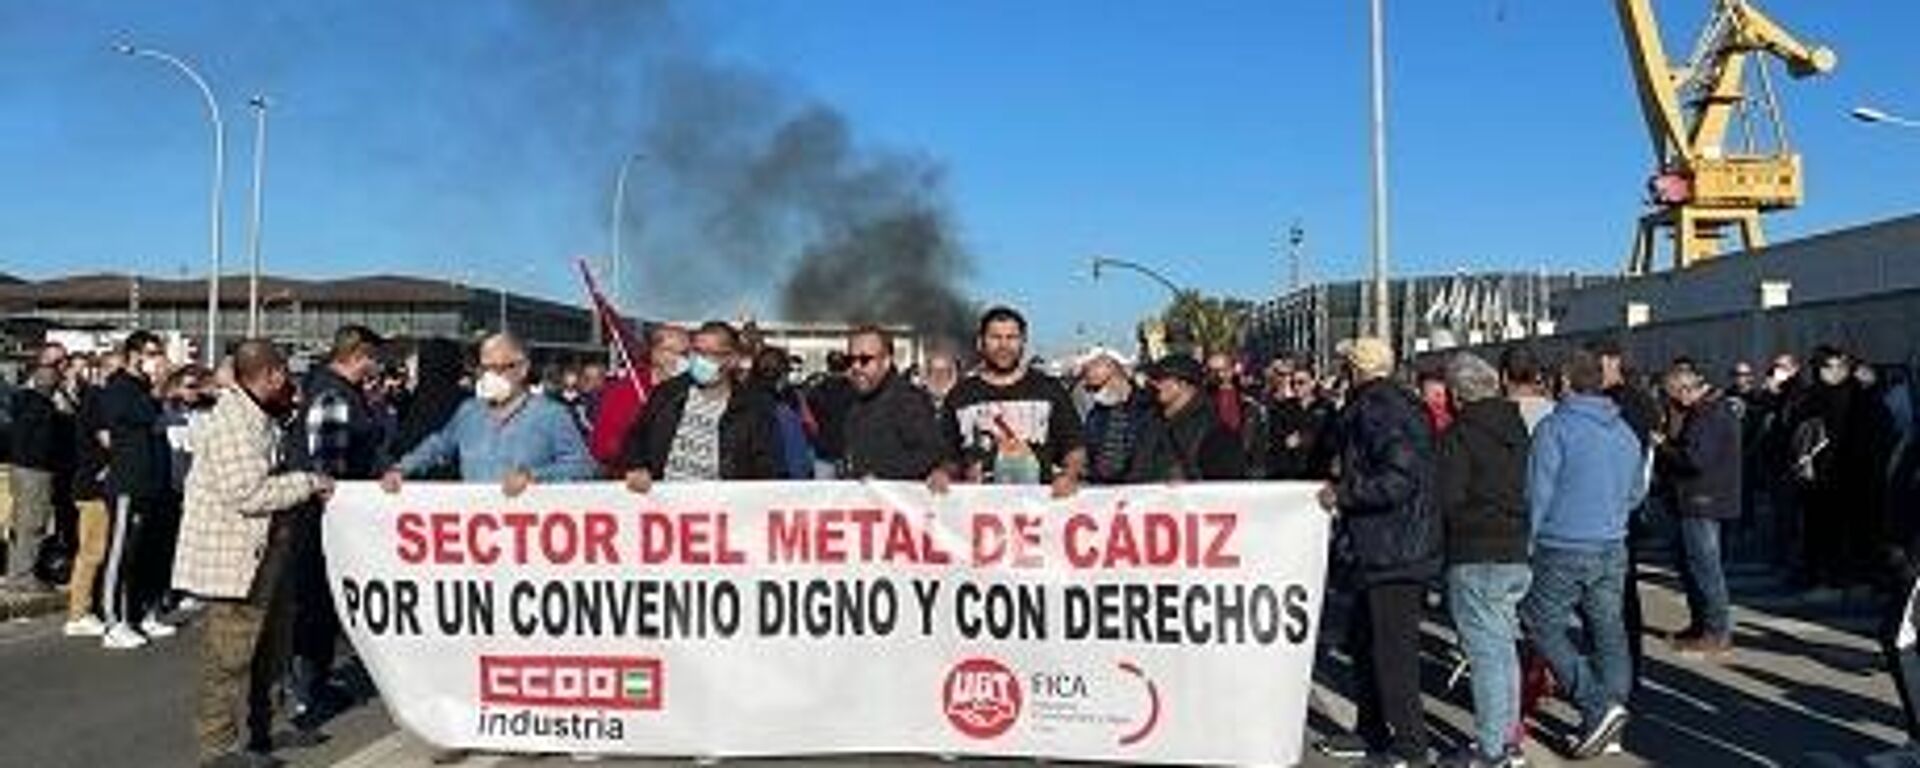 Una protesta en Cádiz de los trabajadores del metal - Sputnik Mundo, 1920, 16.11.2021